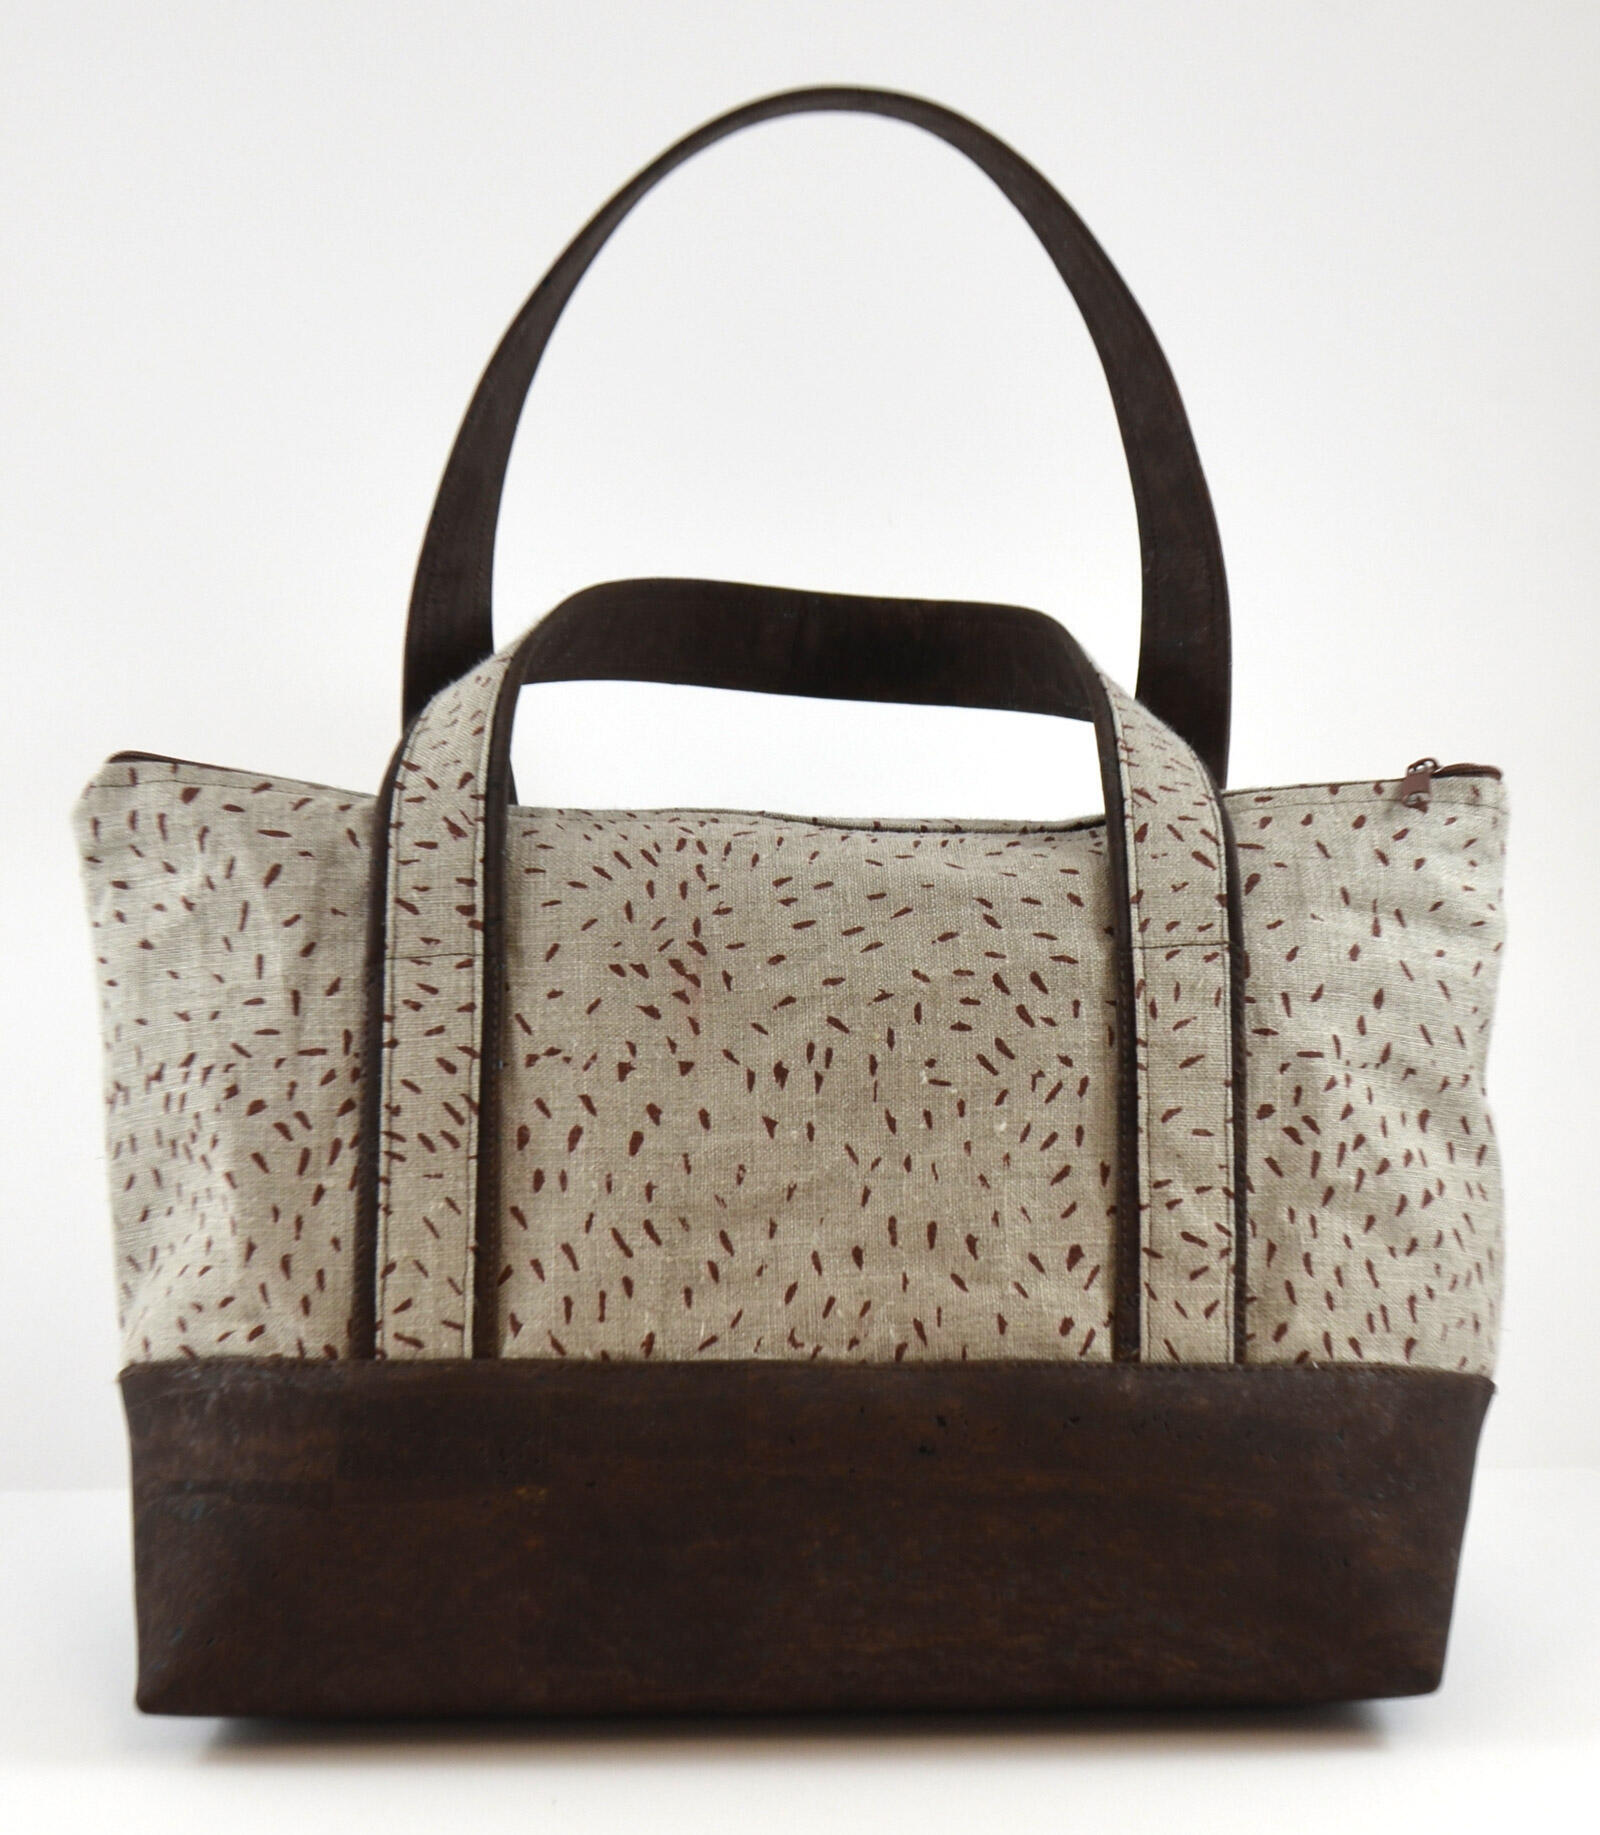 Handbag made of linen and cork, hand printed 